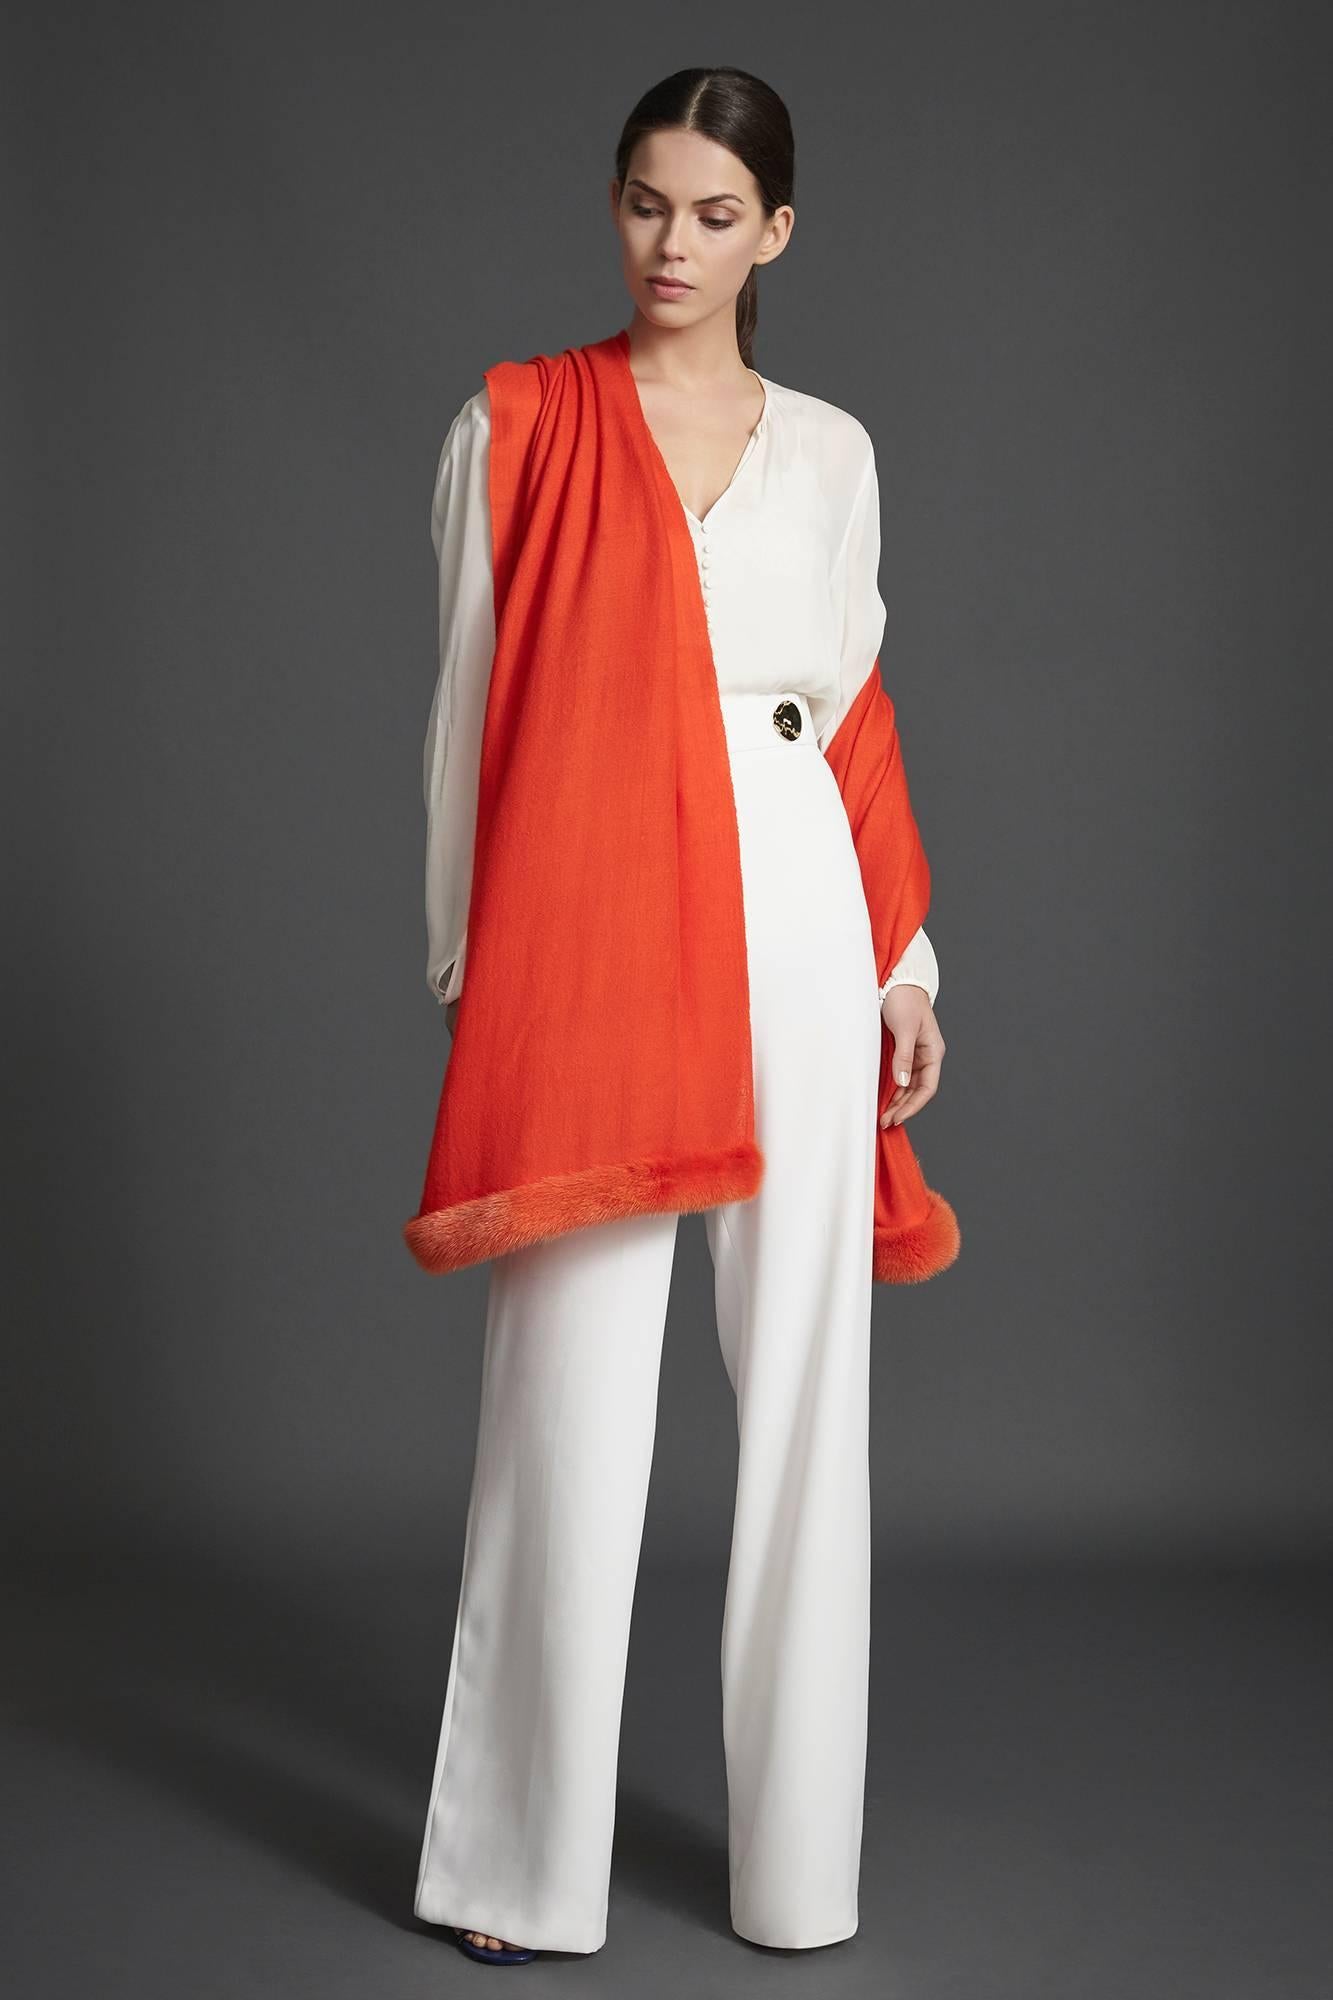 Women's or Men's Verheyen London Handwoven Mink Fur Trimmed Orange Cashmere Shawl - Brand New 